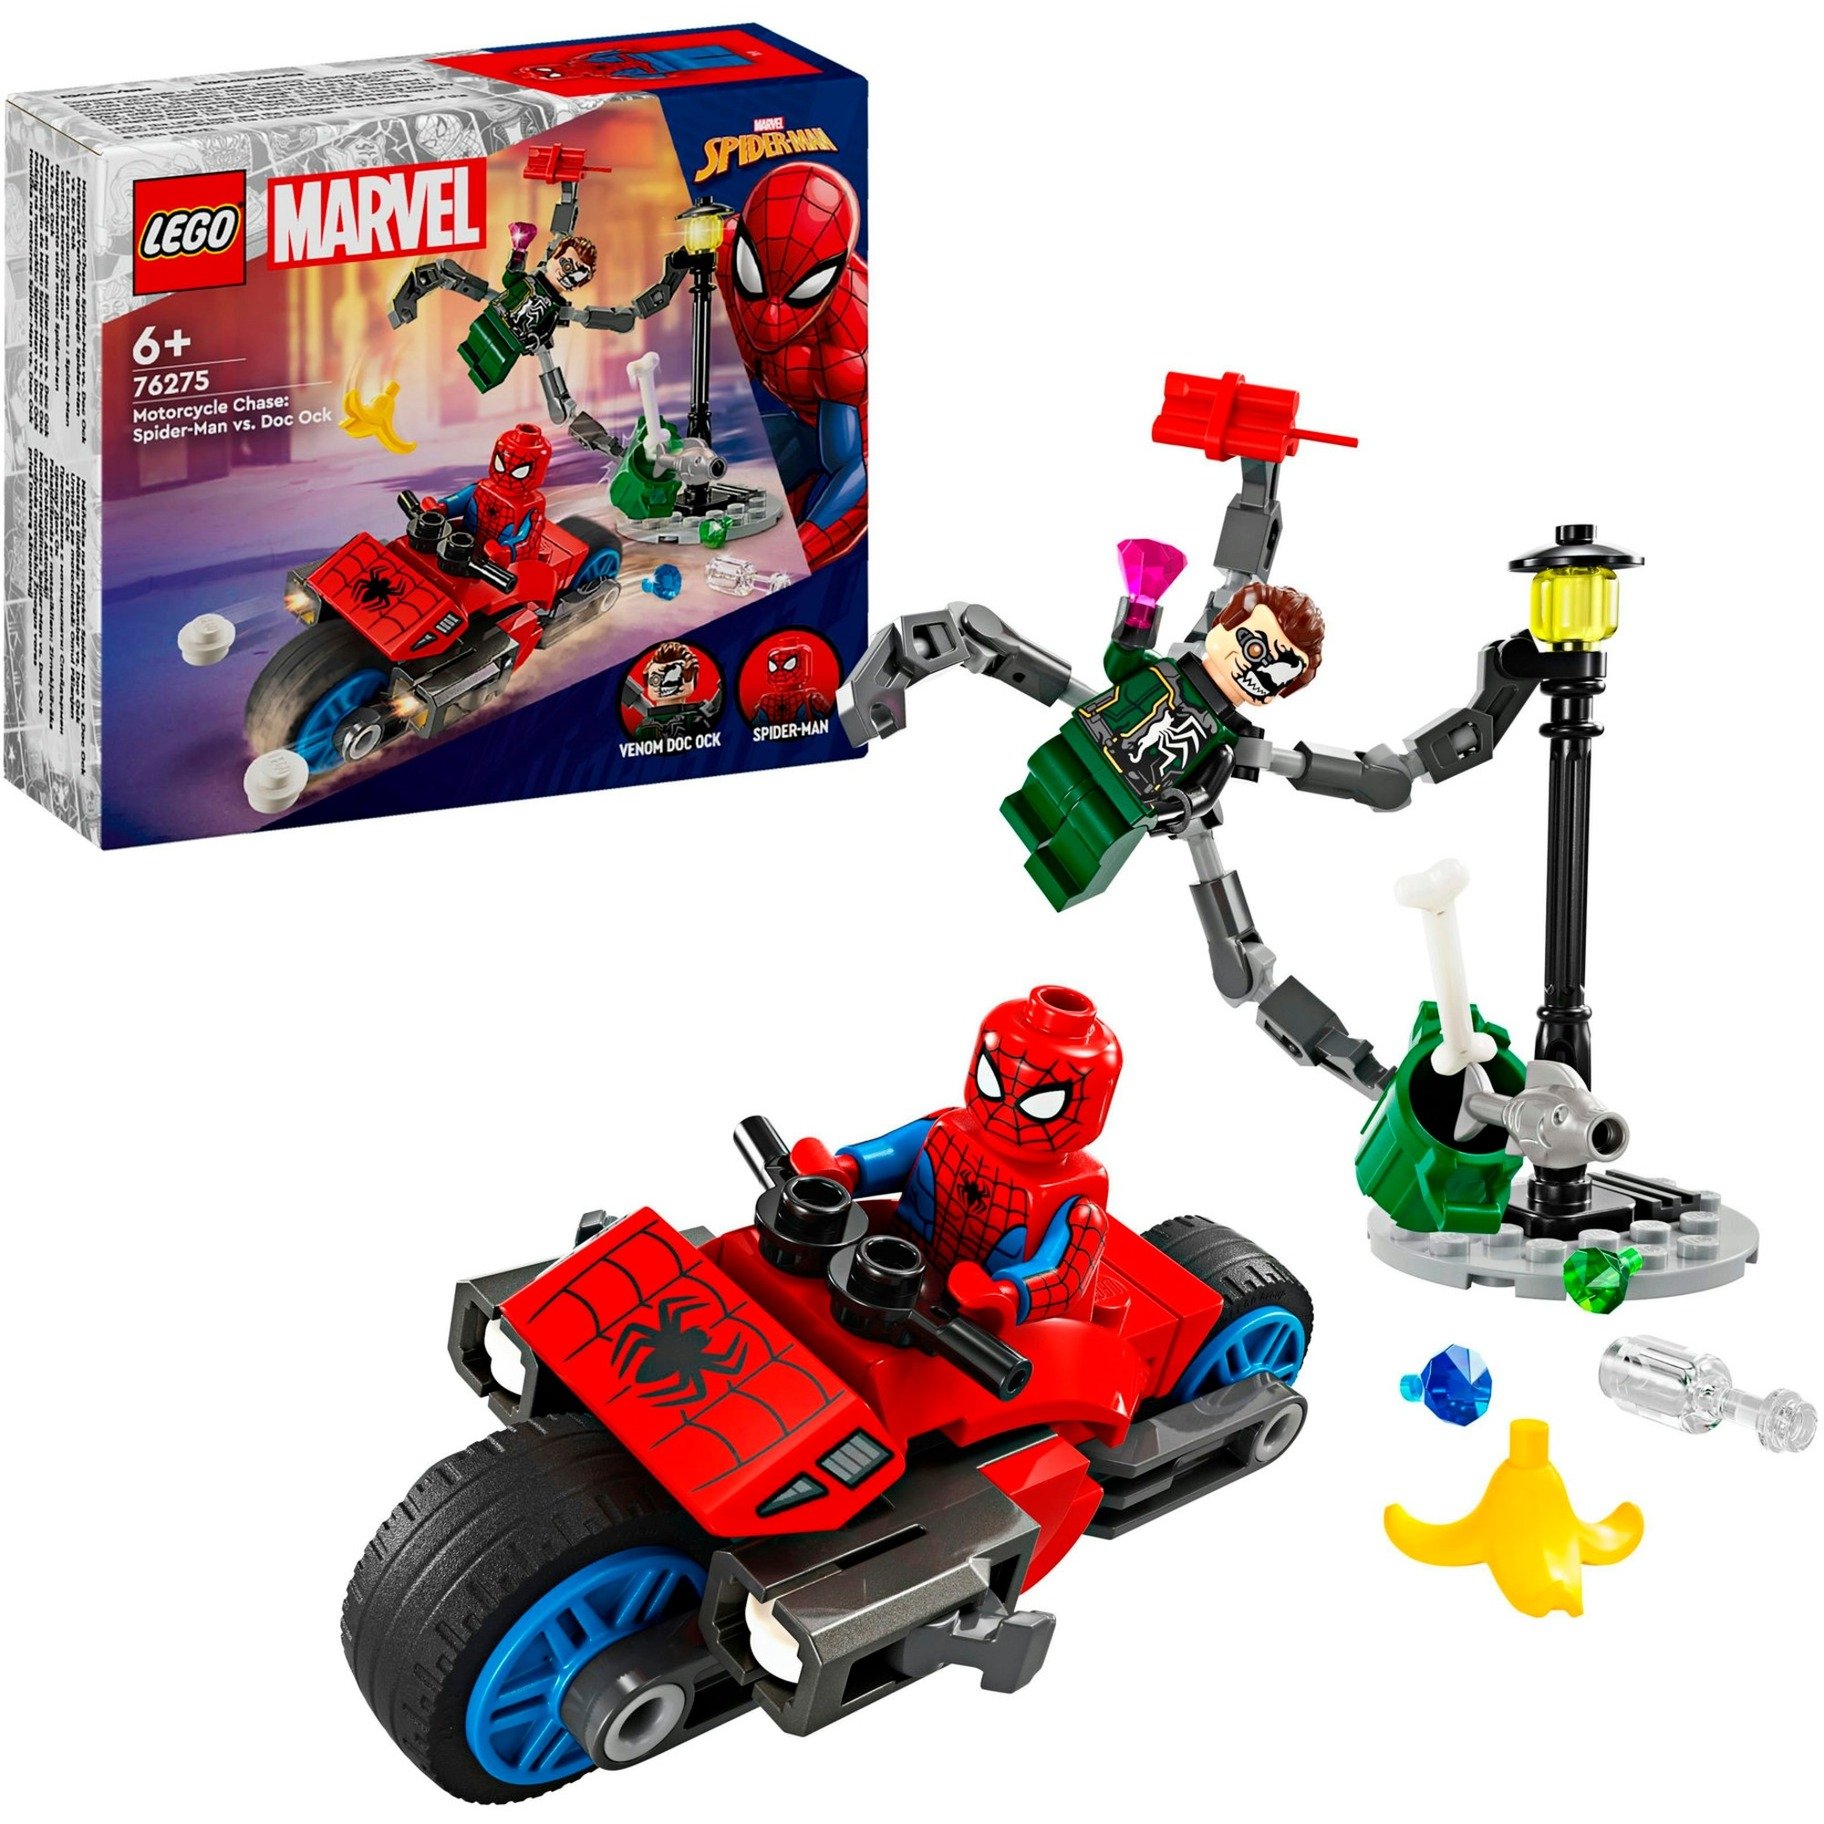 76275 Marvel Super Heroes Motorrad-Verfolgungsjagd: Spider-Man vs. Doc Ock, Konstruktionsspielzeug von Lego